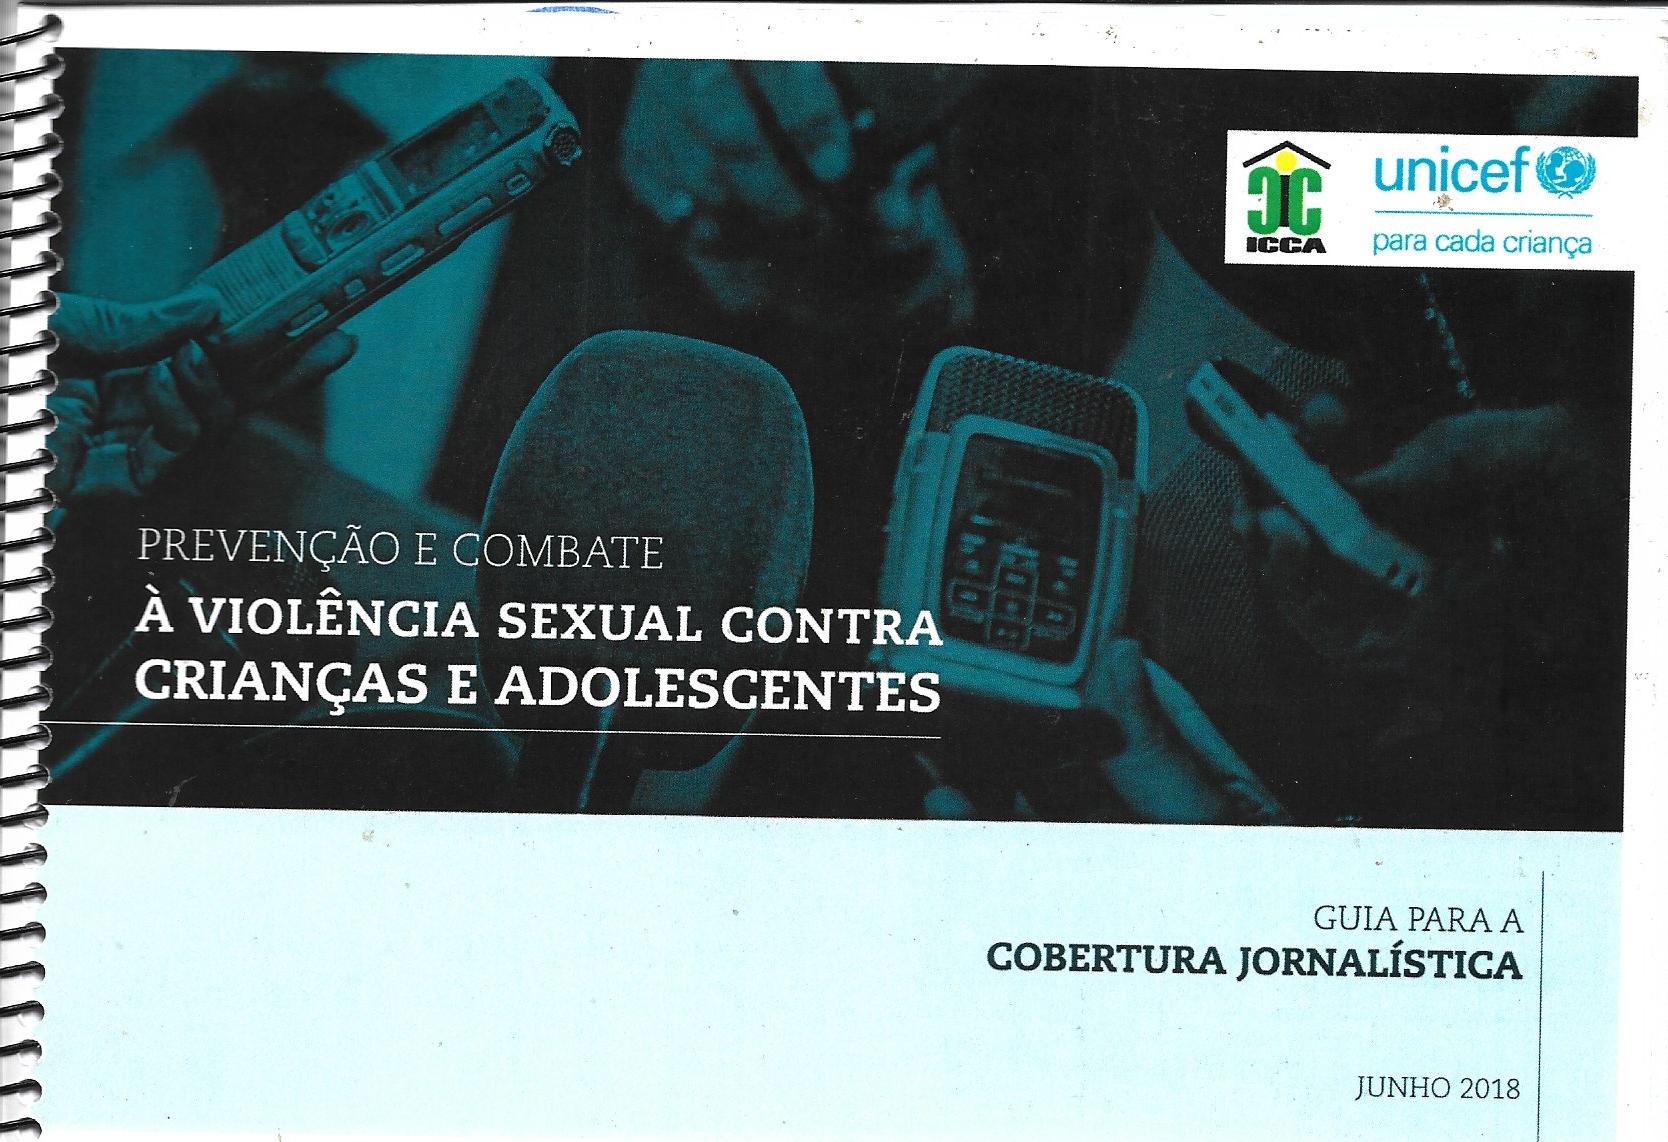 Guia para a Cobertura Jornalística na Prevenção e Combate à Violência Sexual Contra Crianças e Adolescentes 